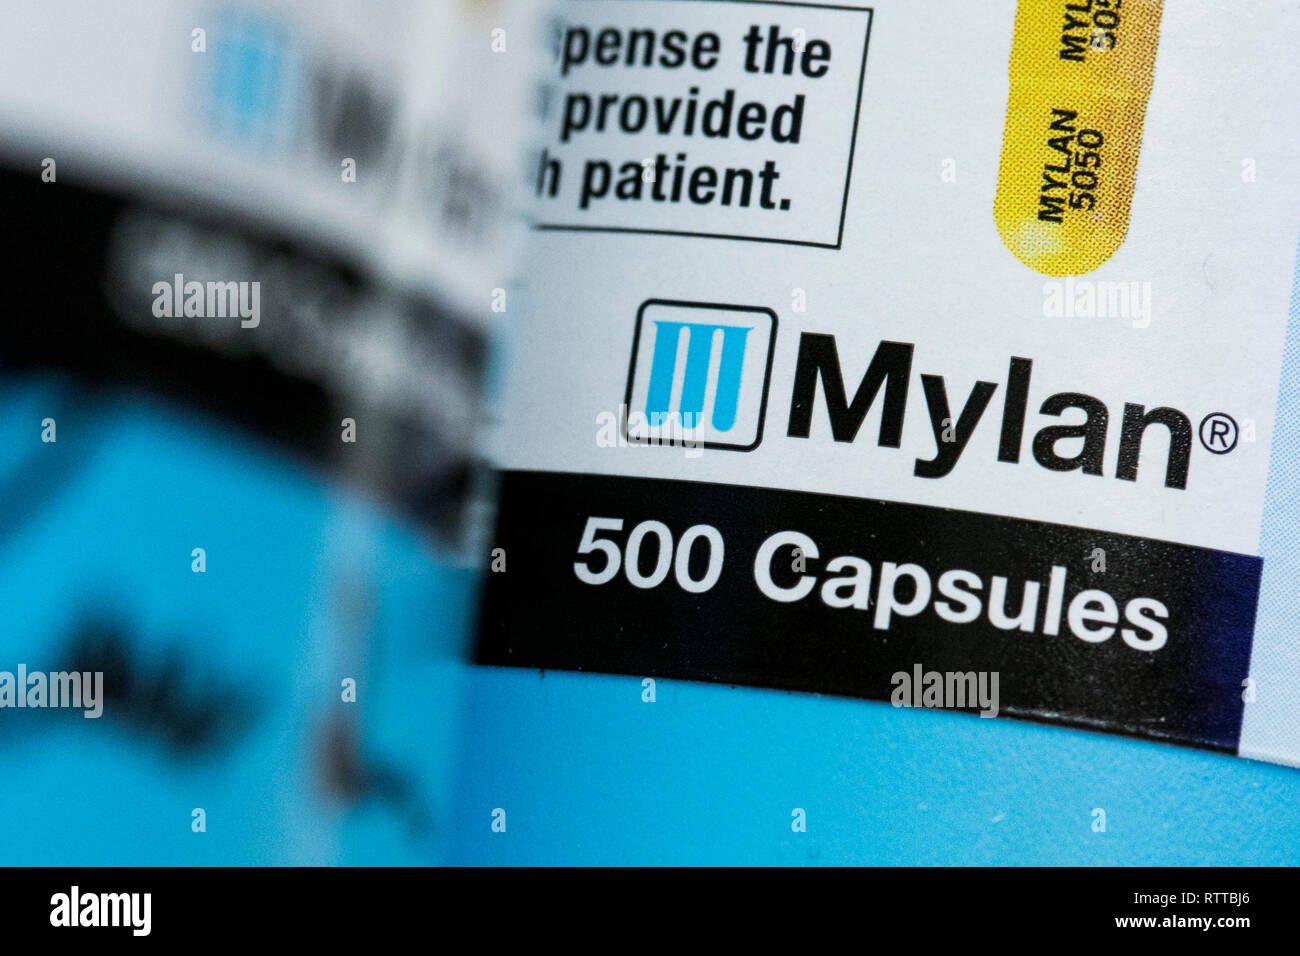 Un logo Mylan est vu sur l'emballage de produits pharmaceutiques sur ordonnance photographié dans une pharmacie. Banque D'Images